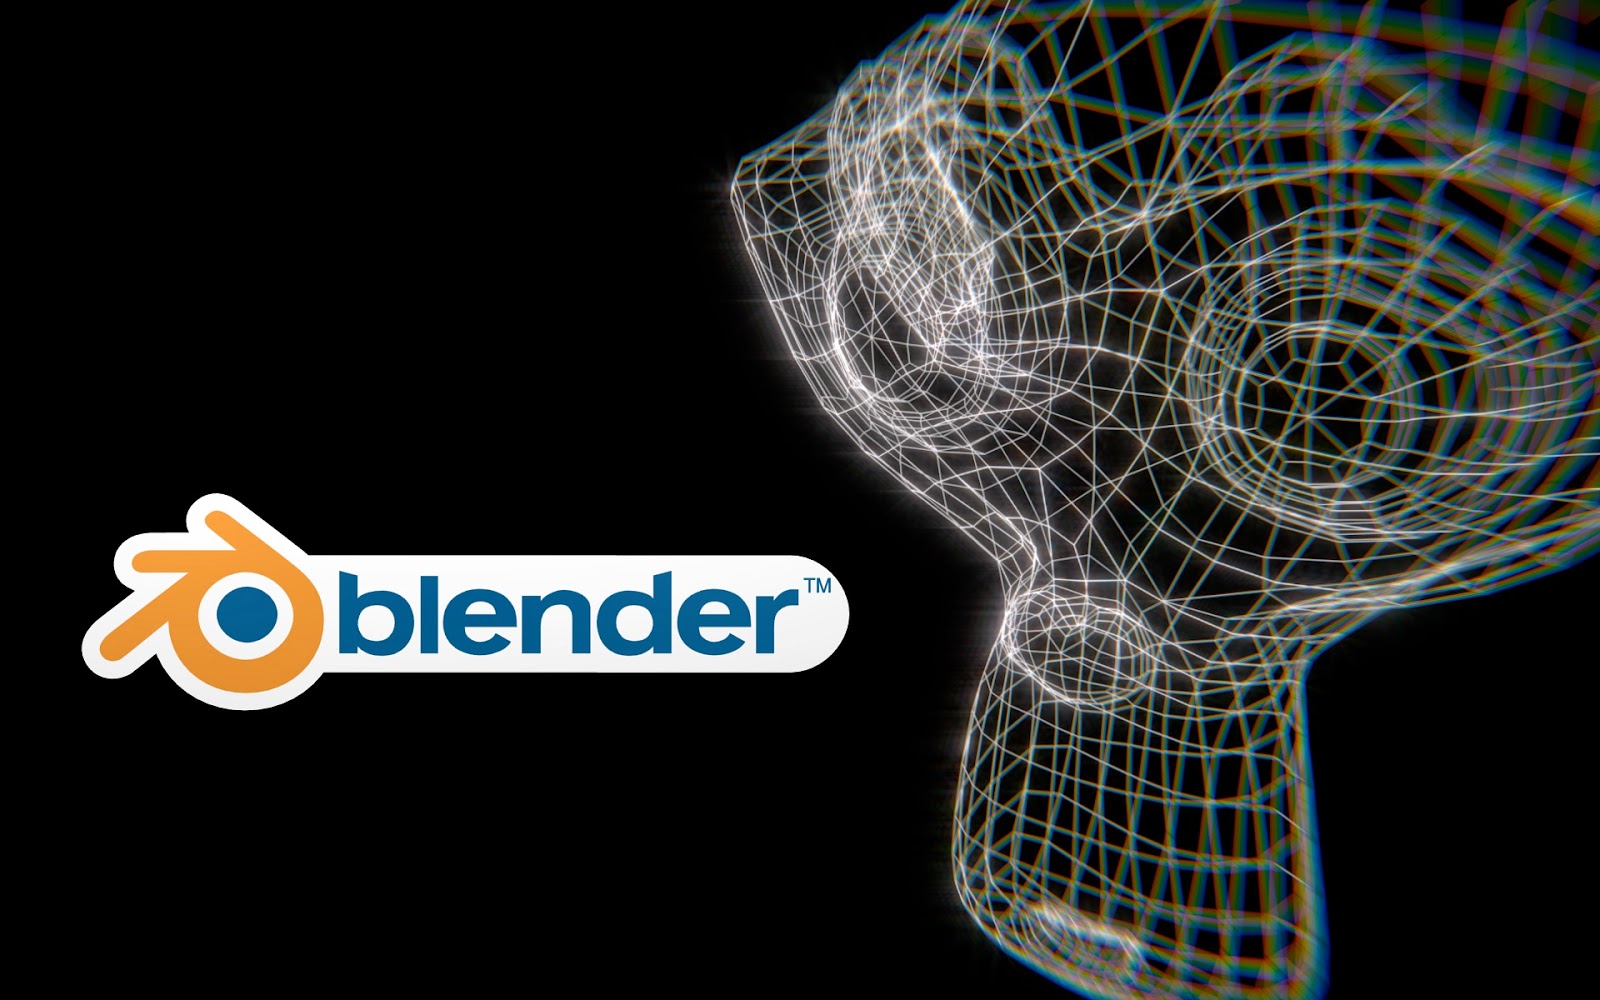 blender software free download for windows 10 64 bit